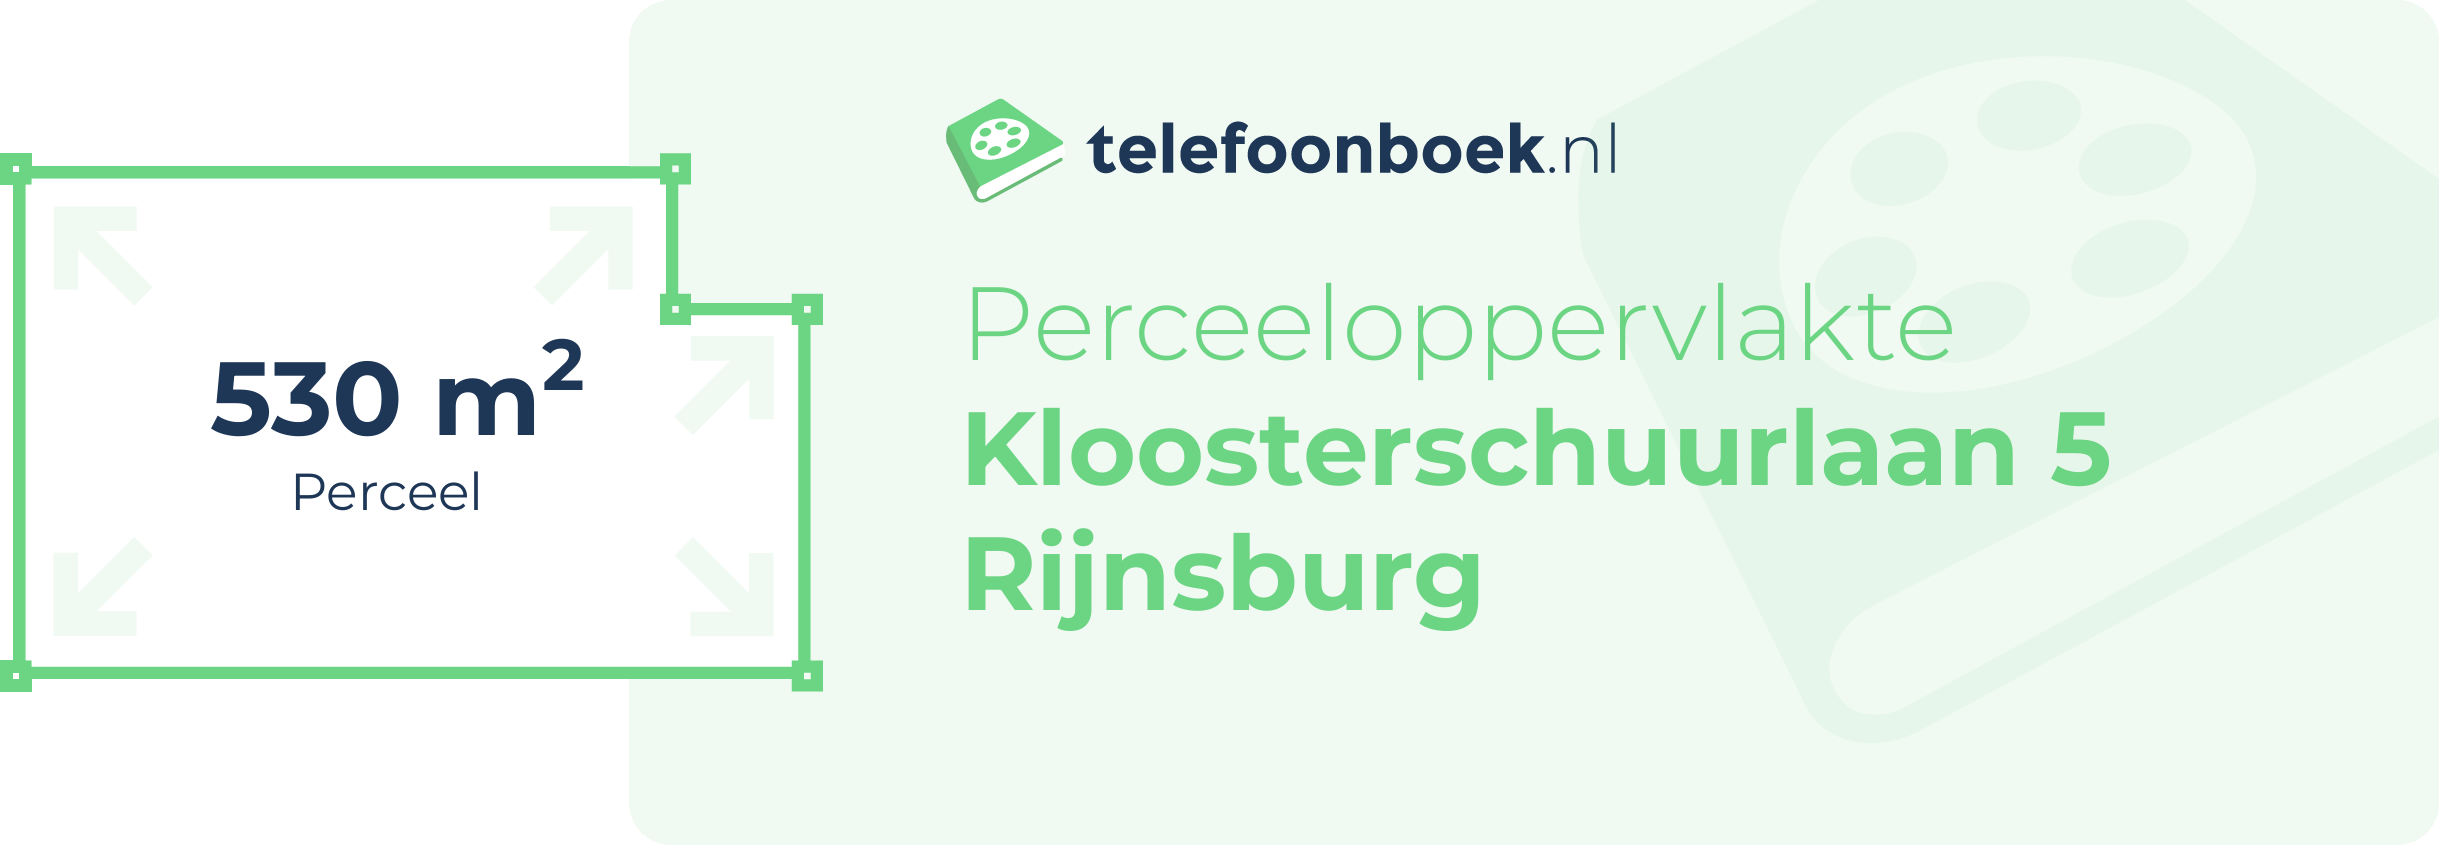 Perceeloppervlakte Kloosterschuurlaan 5 Rijnsburg